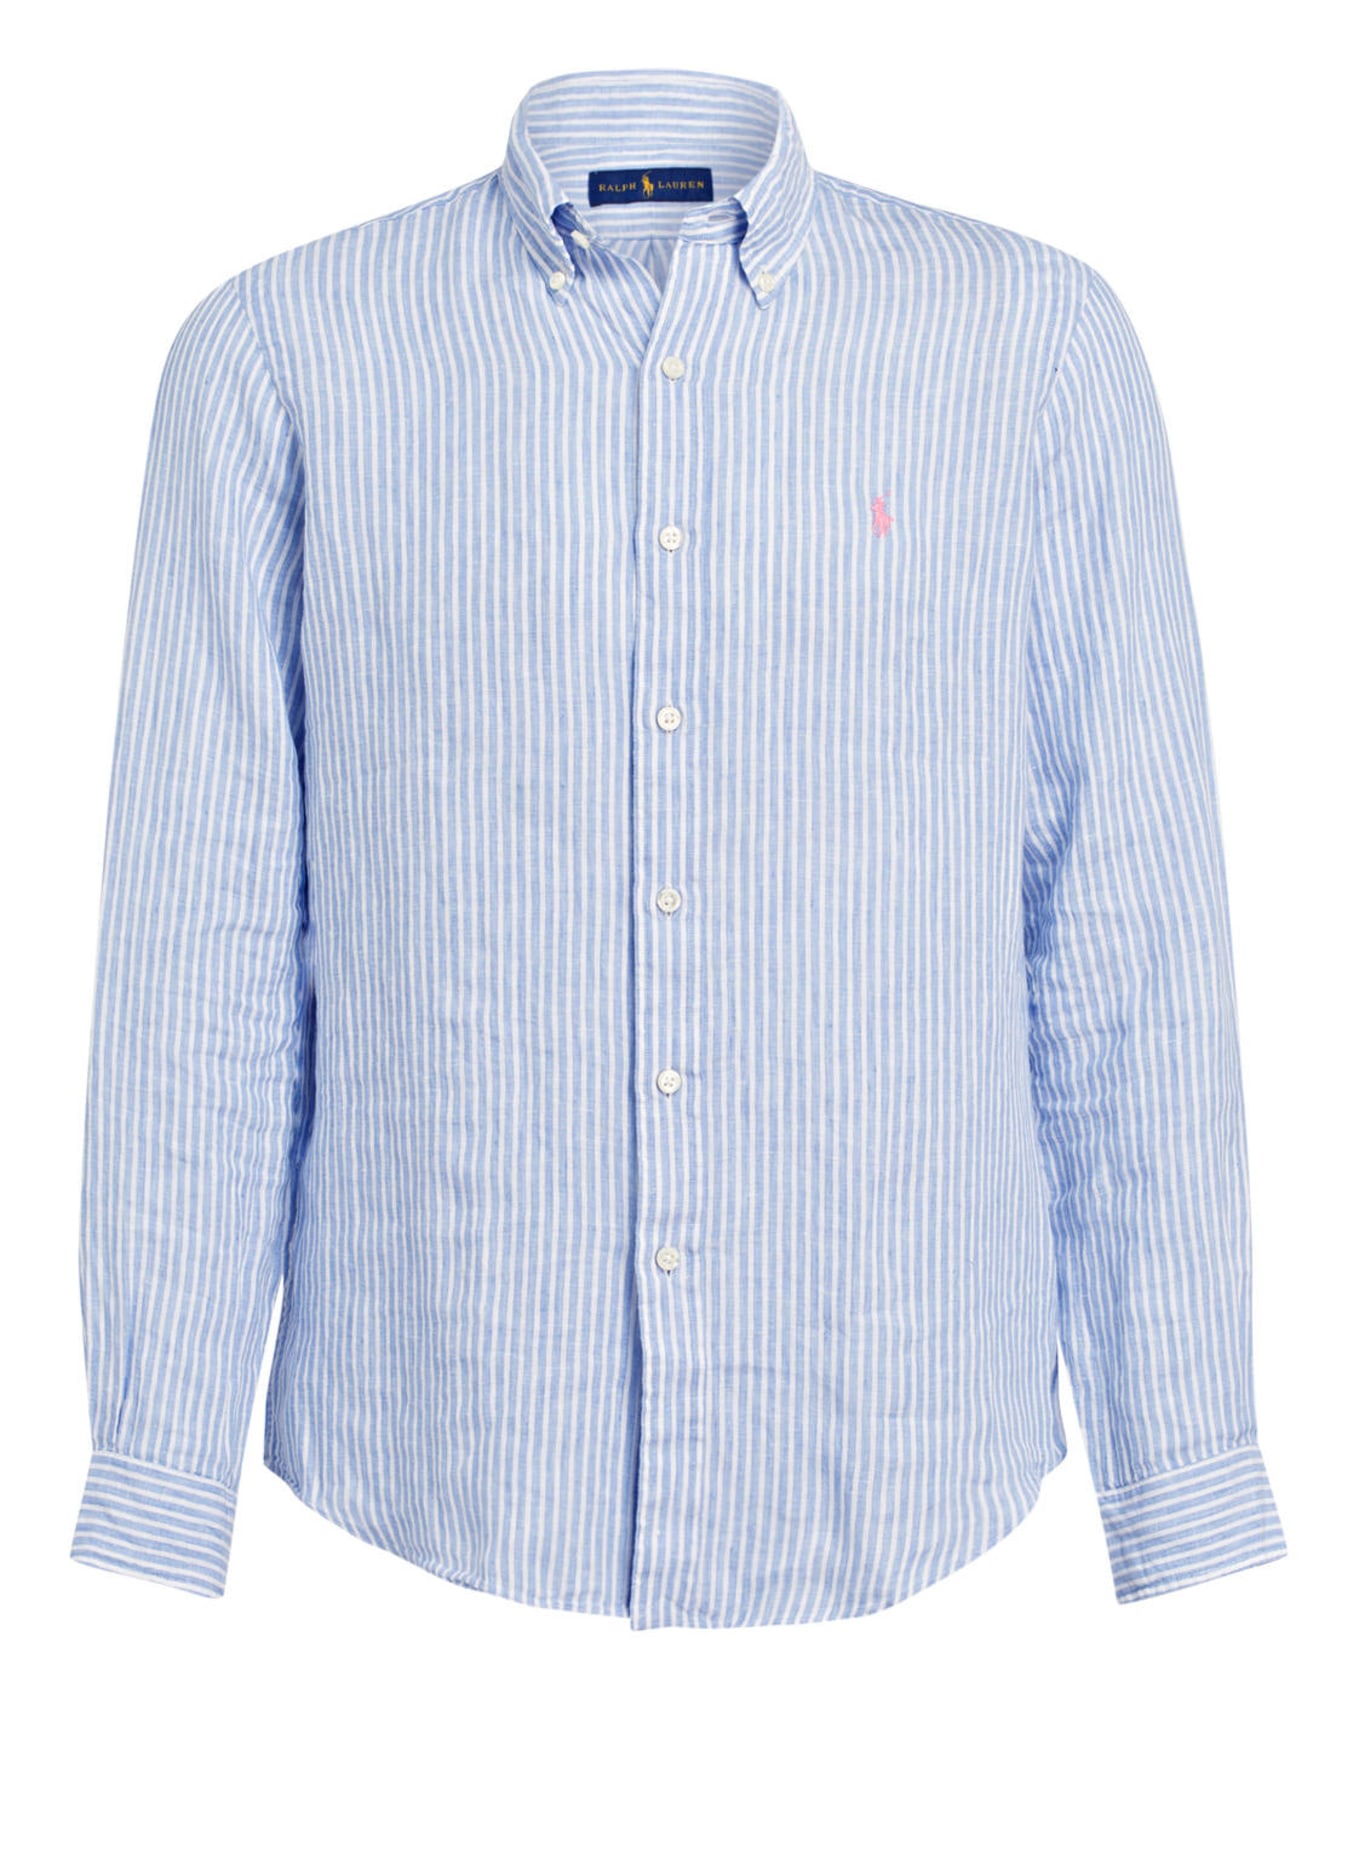 POLO RALPH LAUREN Linen shirt classic fit, Color: LIGHT BLUE/ WHITE (Image 1)